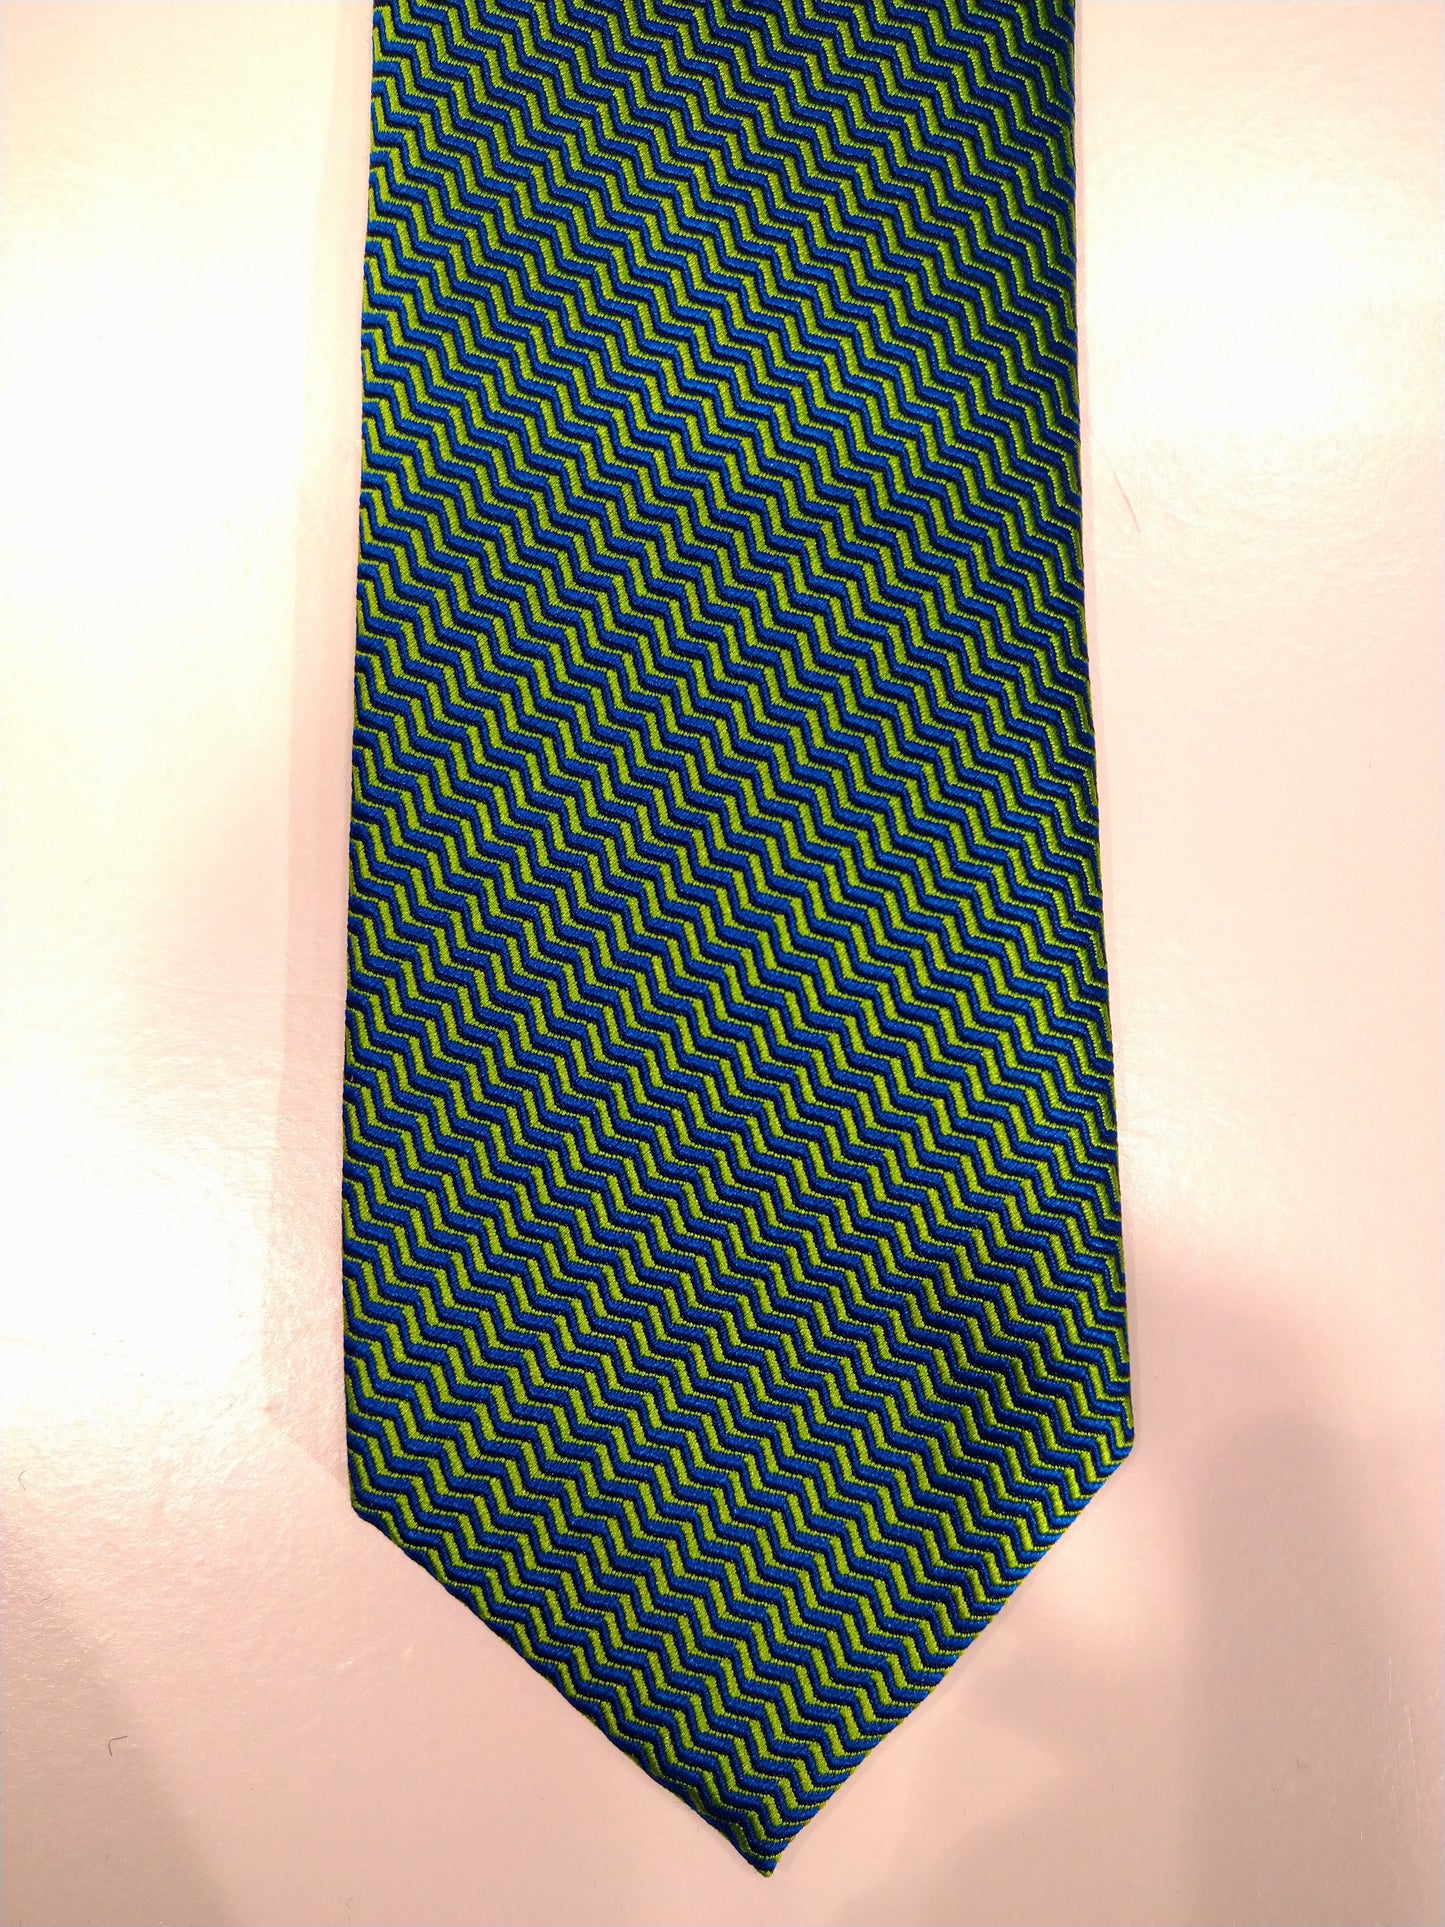 Cravatta di seta Max Goodman. Verde con motivo giallo.